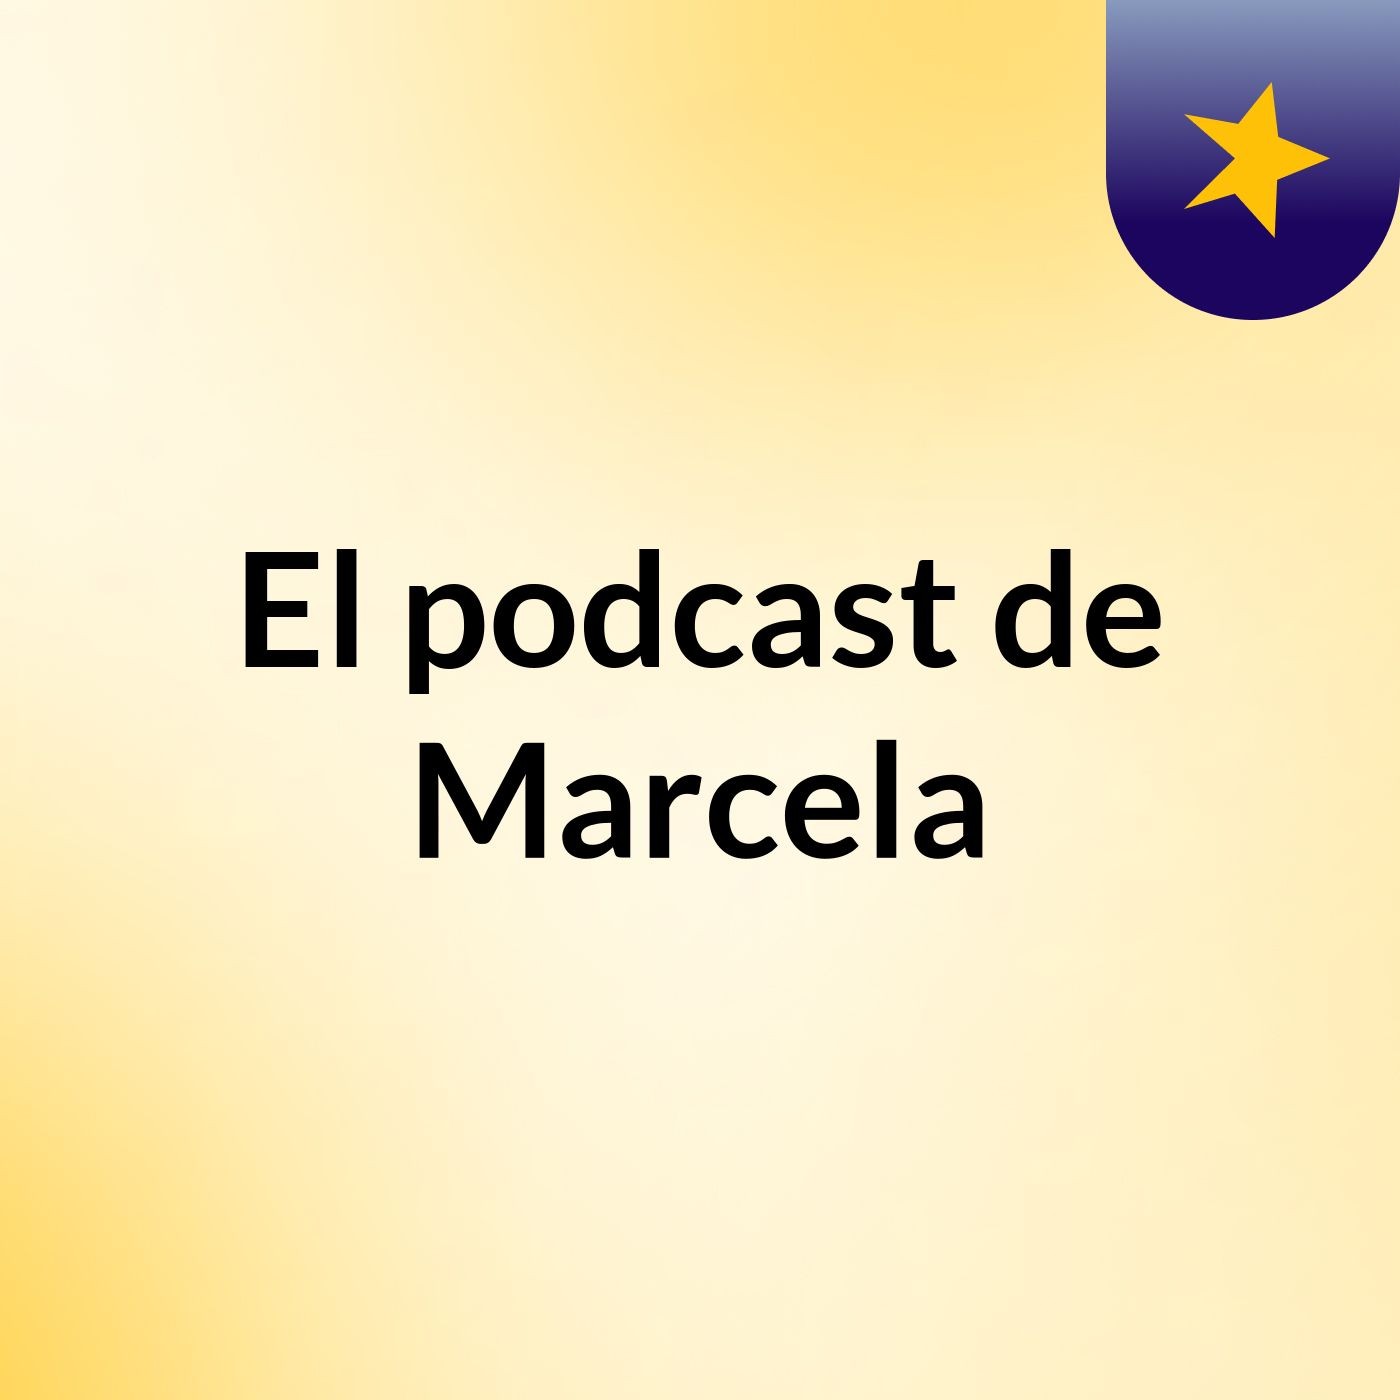 El podcast de Marcela